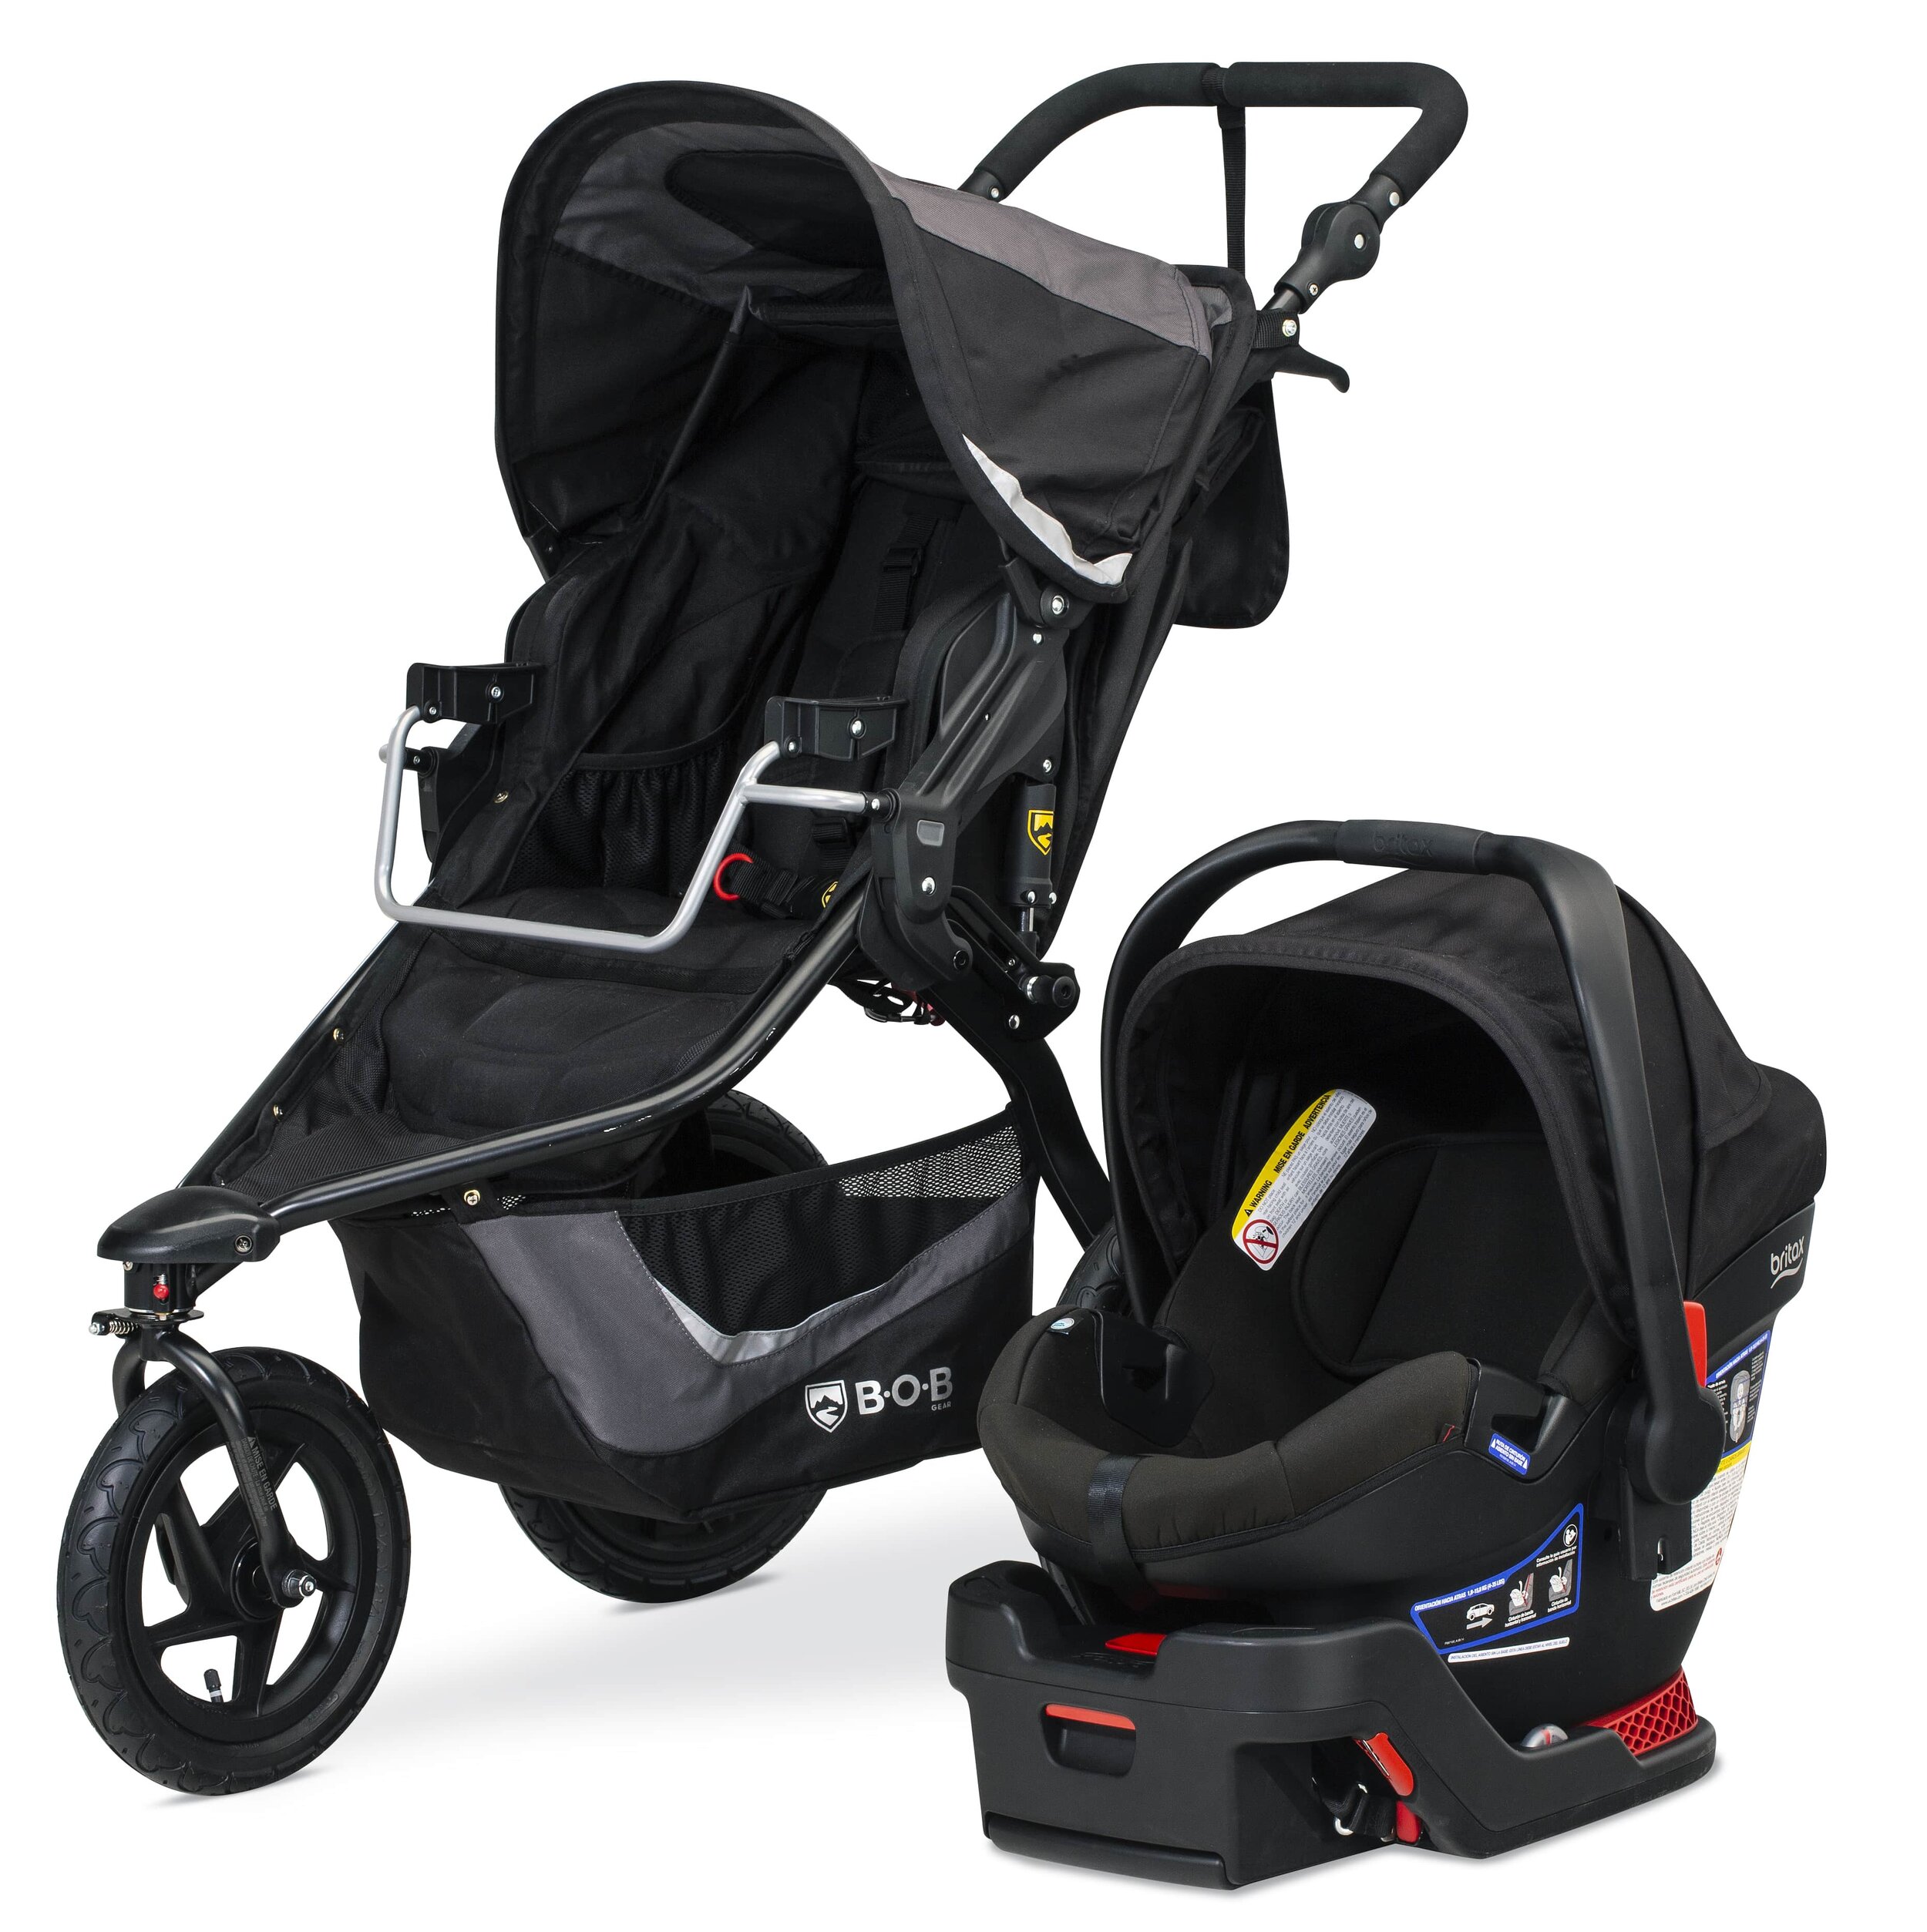 Left Facing Revolution Flex 3.0 Stroller with B-Safe Gen2 Infant Car Seat